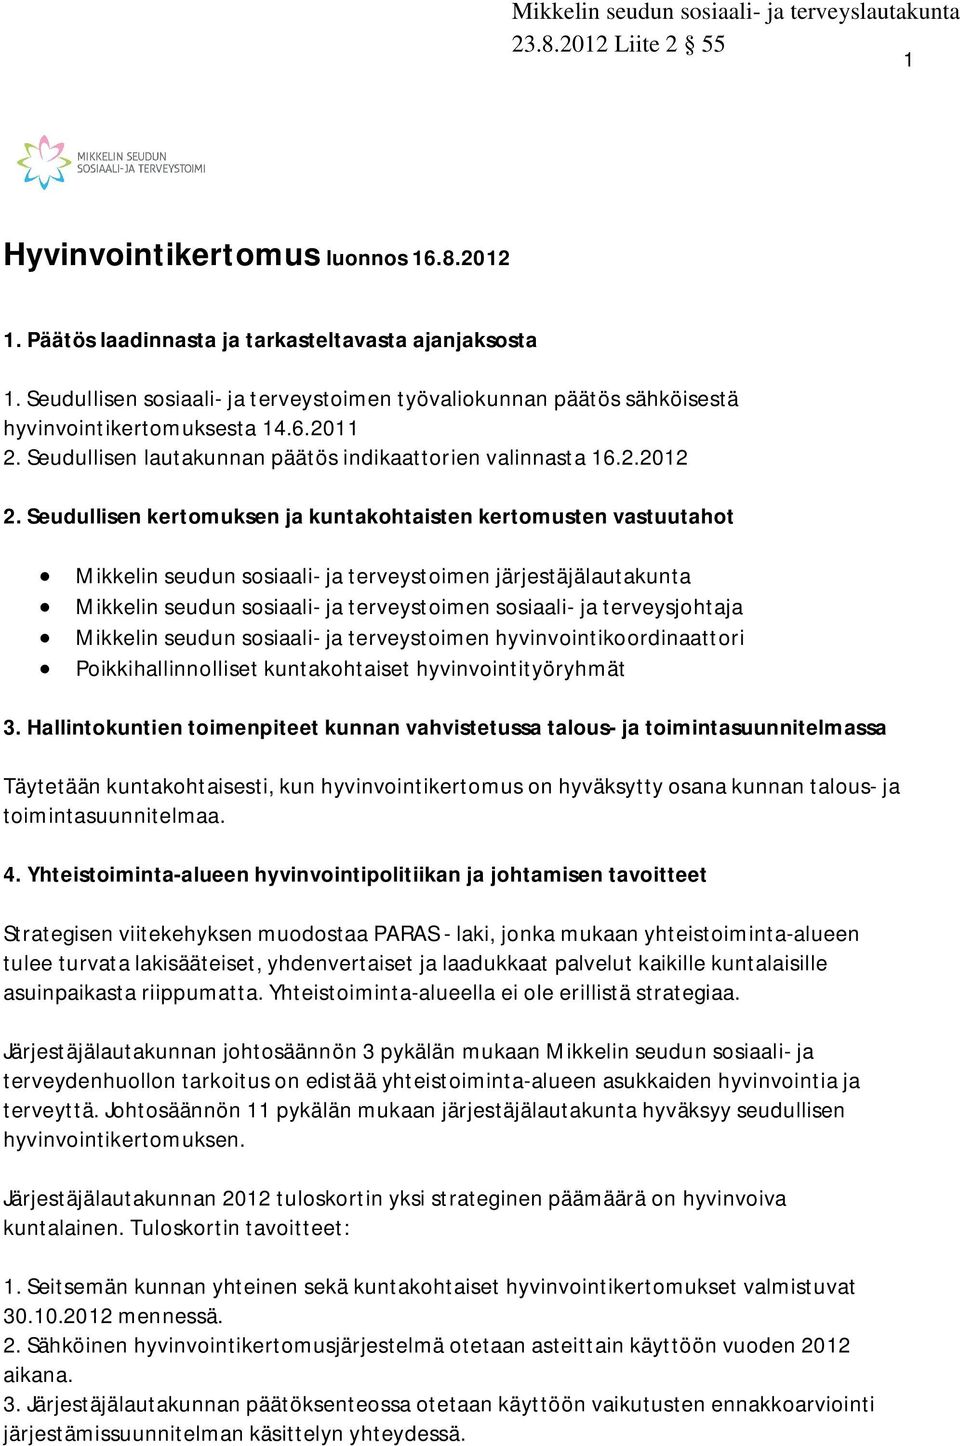 Seudullisen kertomuksen ja kuntakohtaisten kertomusten vastuutahot Mikkelin seudun sosiaali- ja terveystoimen järjestäjälautakunta Mikkelin seudun sosiaali- ja terveystoimen sosiaali- ja